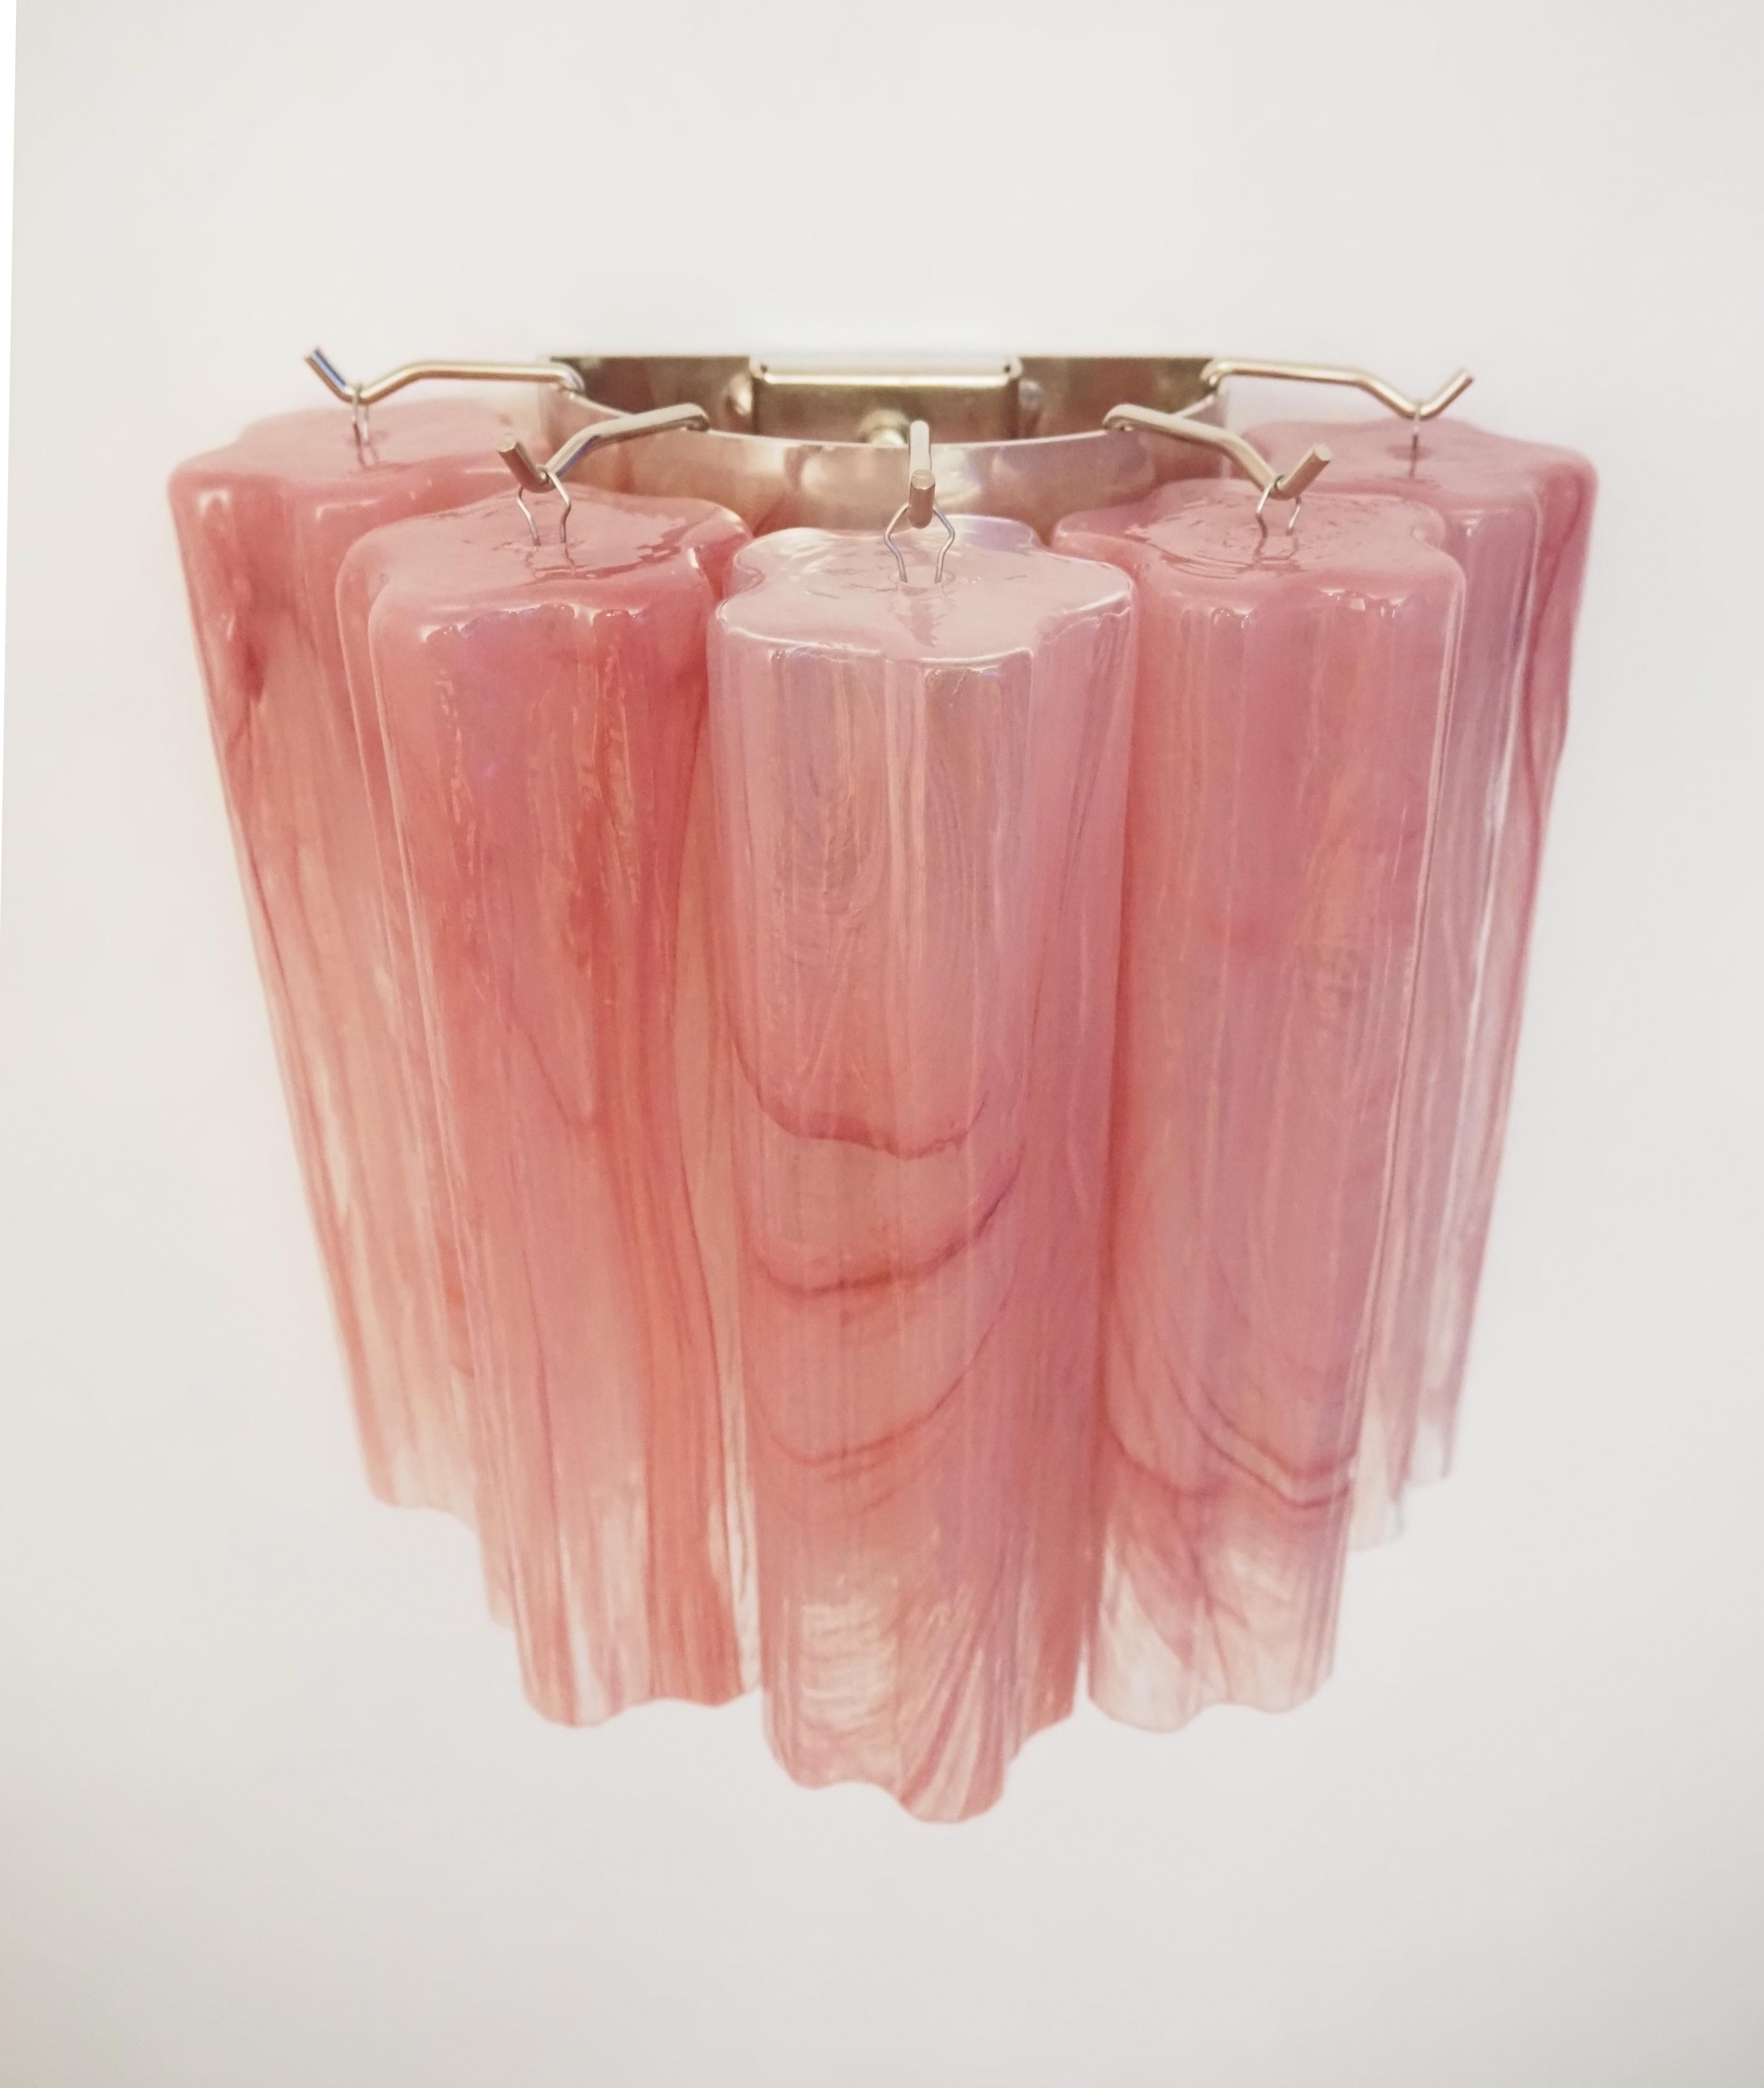 Fantastique paire d'appliques murales tubes en verre de Murano - 5 tubes en verre albâtre rose 7